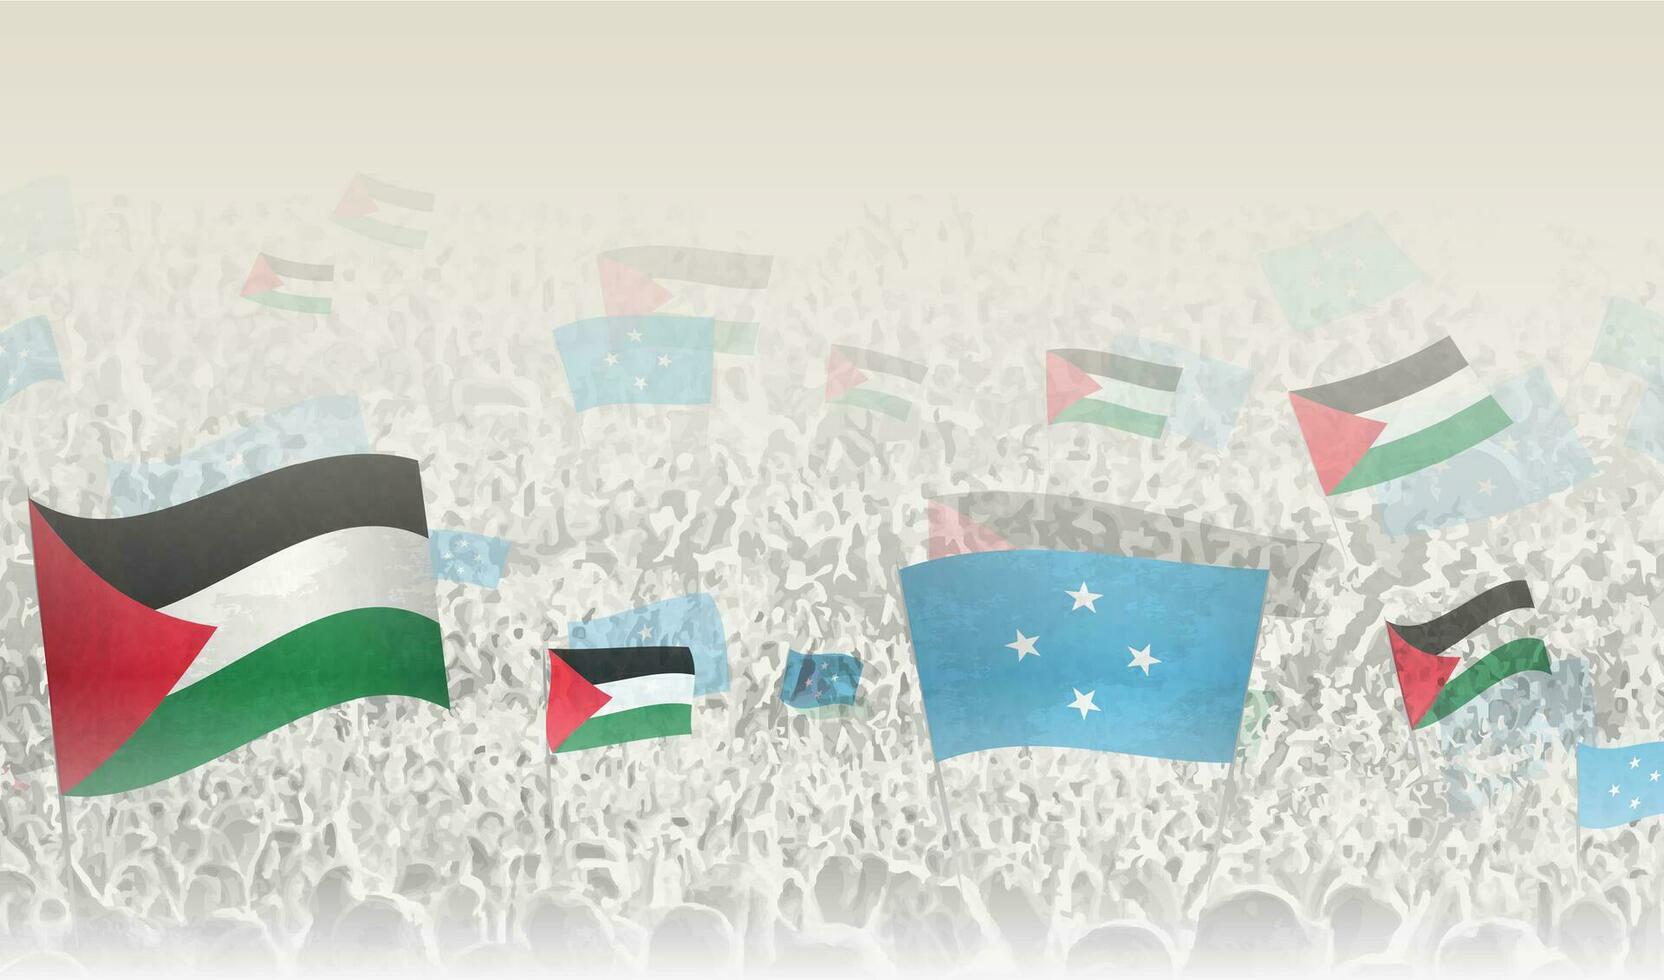 Palestina y micronesia banderas en un multitud de aplausos gente. vector